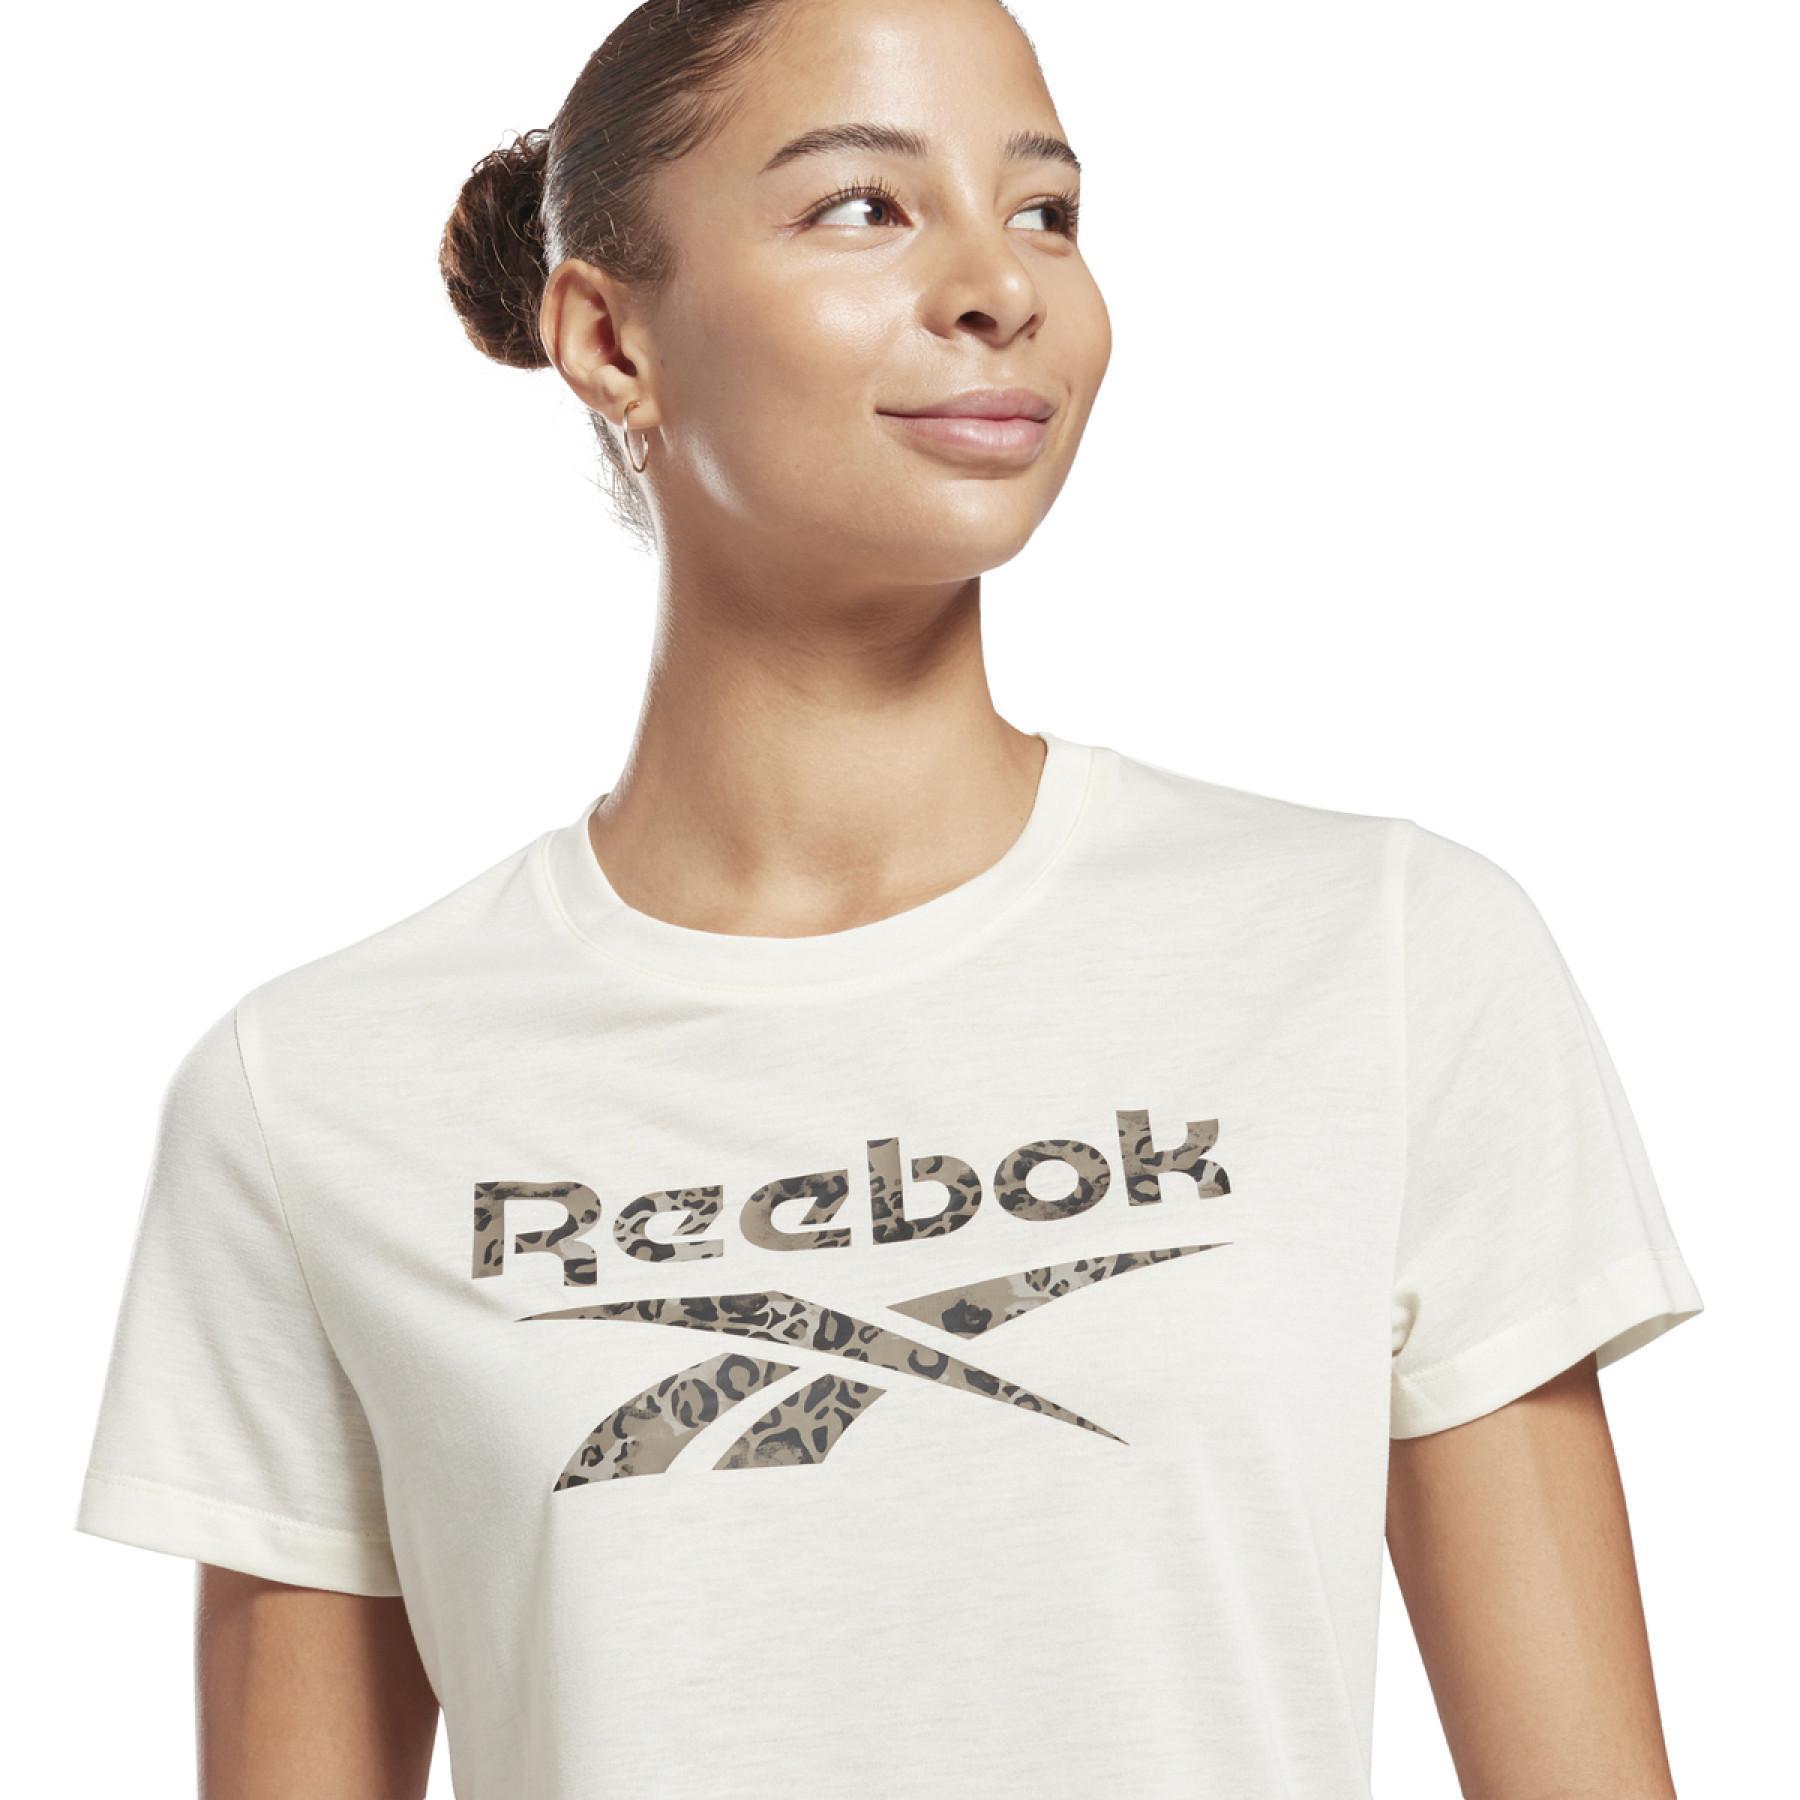 Frauen-T-Shirt Reebok Modern Safari Logo